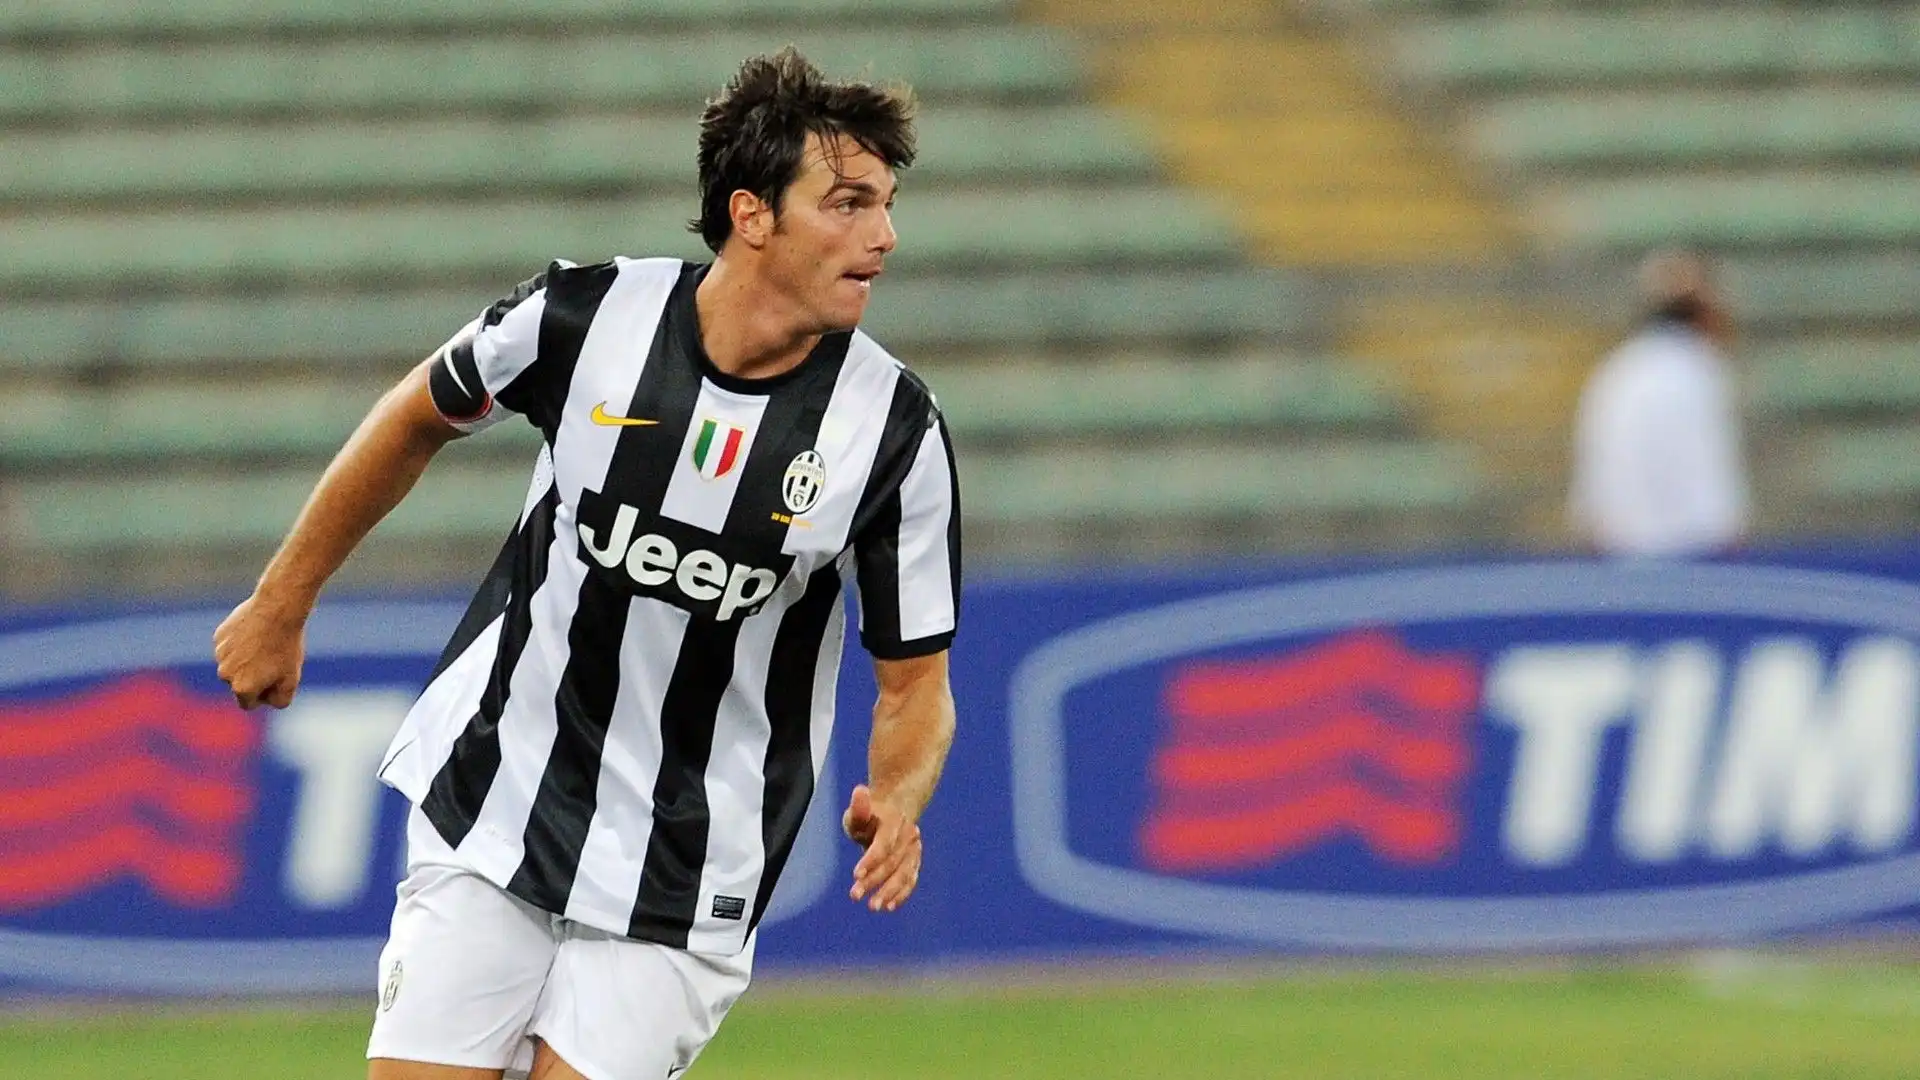 Paolo De Ceglie: in carriera ha giocato anche per la Juventus, poi ha deciso di dedicarsi alla musica. Ha prodotto la canzone 'Moving on'